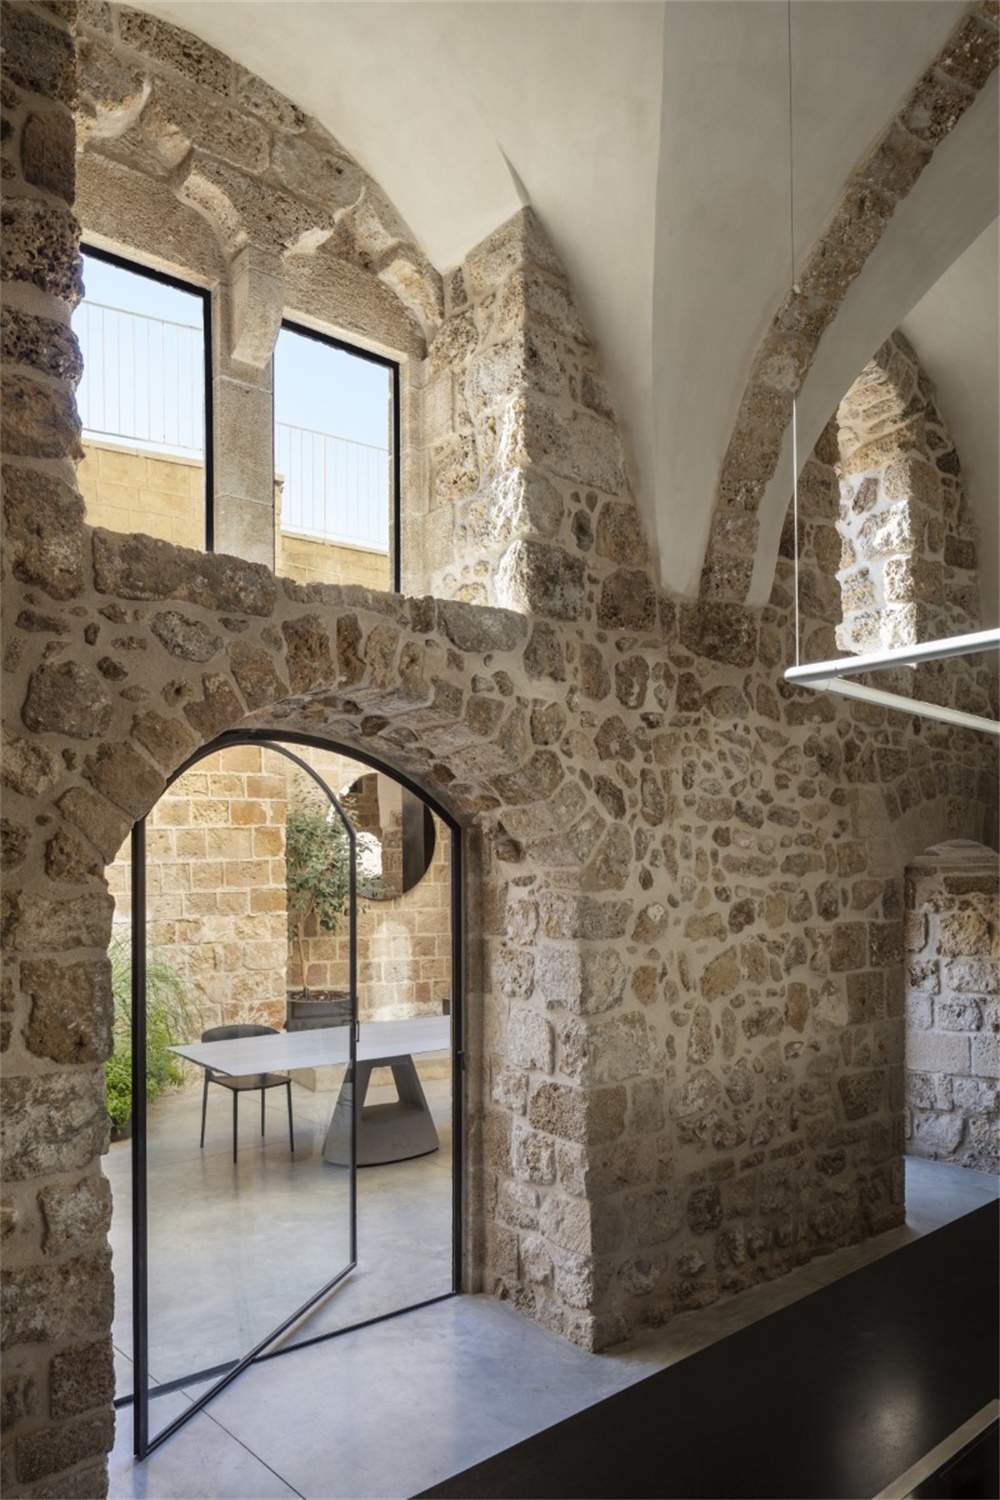 住宅空间，Pitsou Kedem Architects，以色列，建筑改造，历史建筑改造，现代风格住宅设计